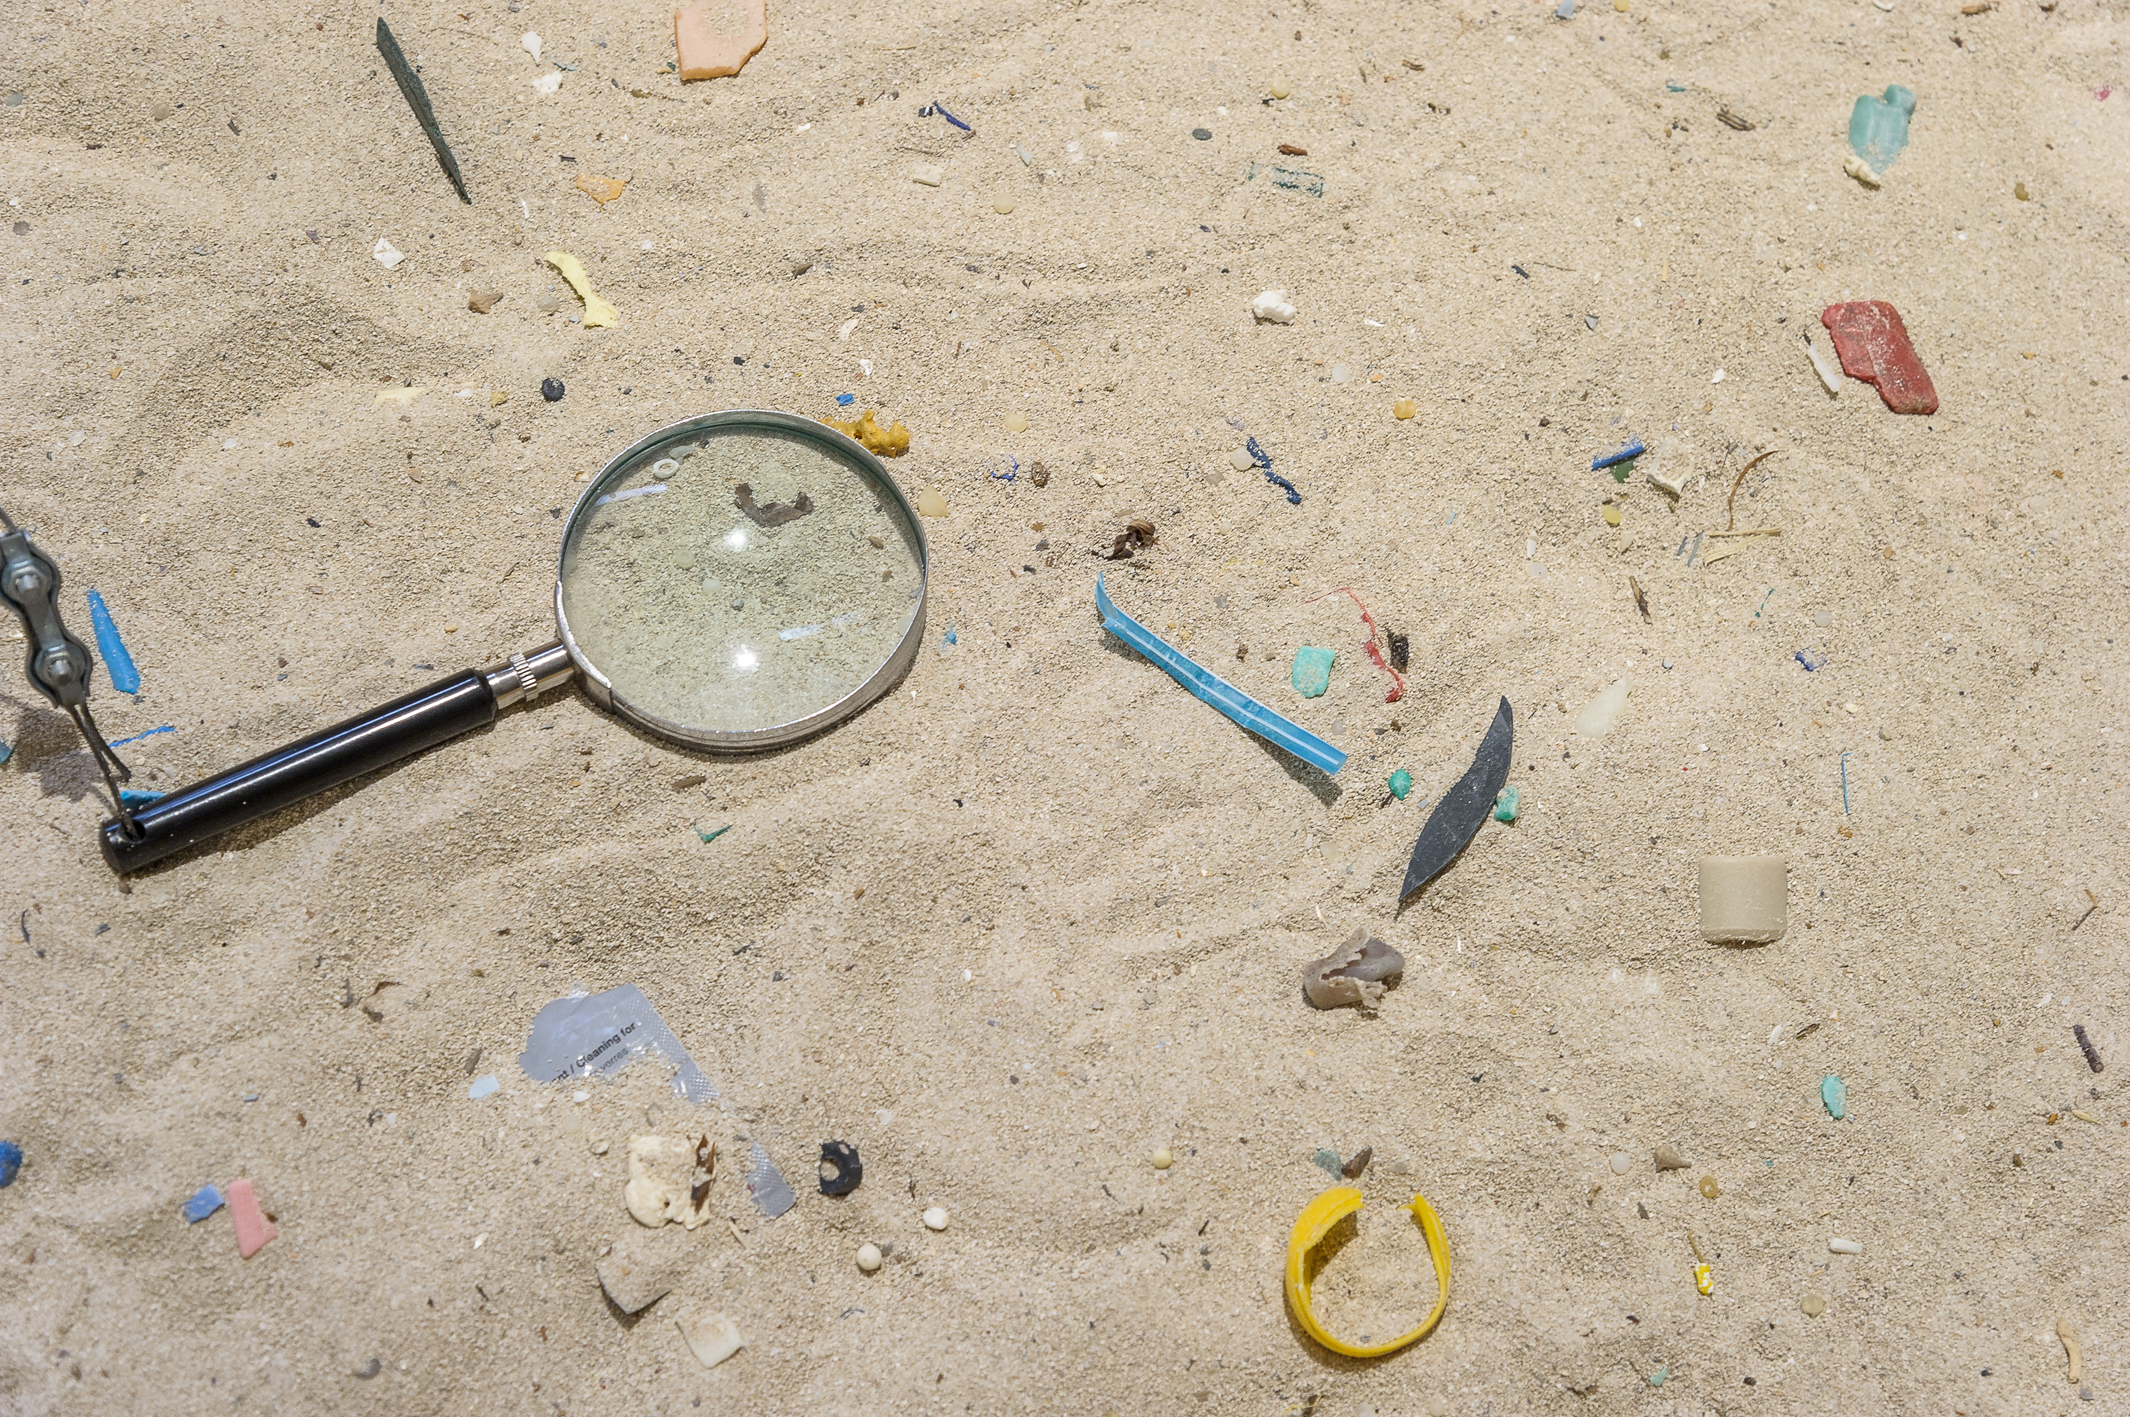 Plastikmüll im Sand, Ausstellungsansicht aus dem Naturkundemuseum, Foto: UMJ